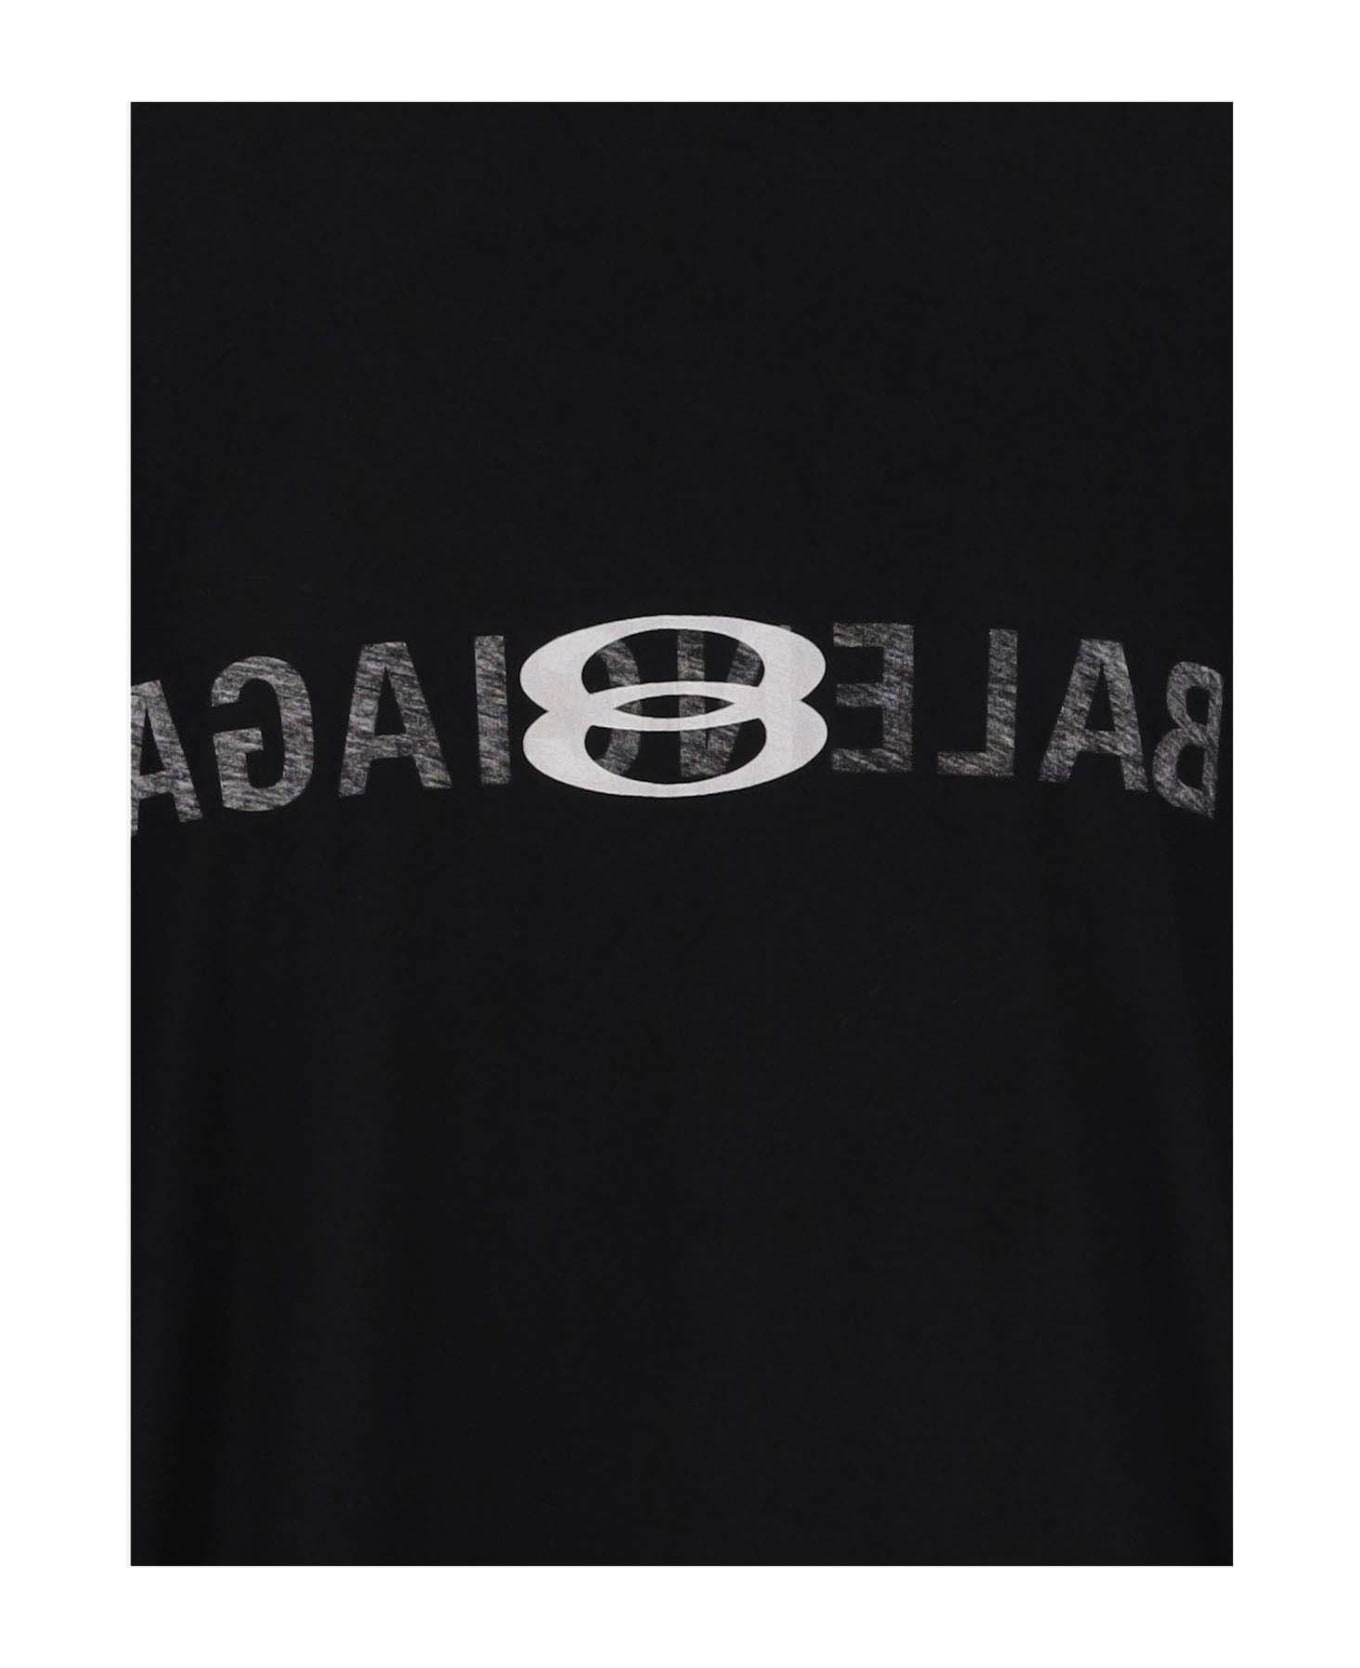 Balenciaga des T-shirt With Logo - Black